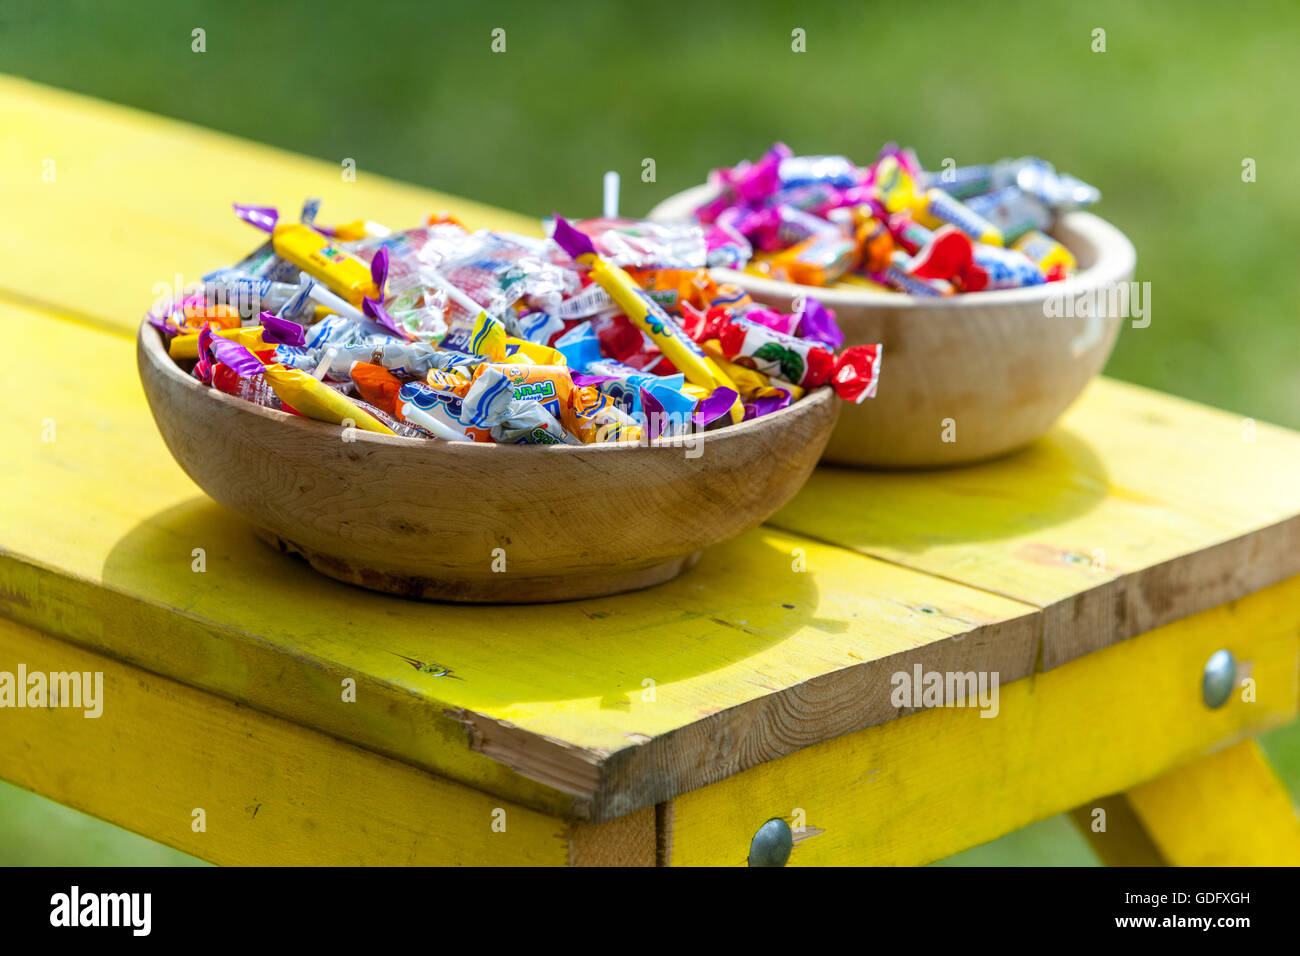 Des bonbons, des bonbons enveloppés dans un panier bol en bois sur la table Banque D'Images